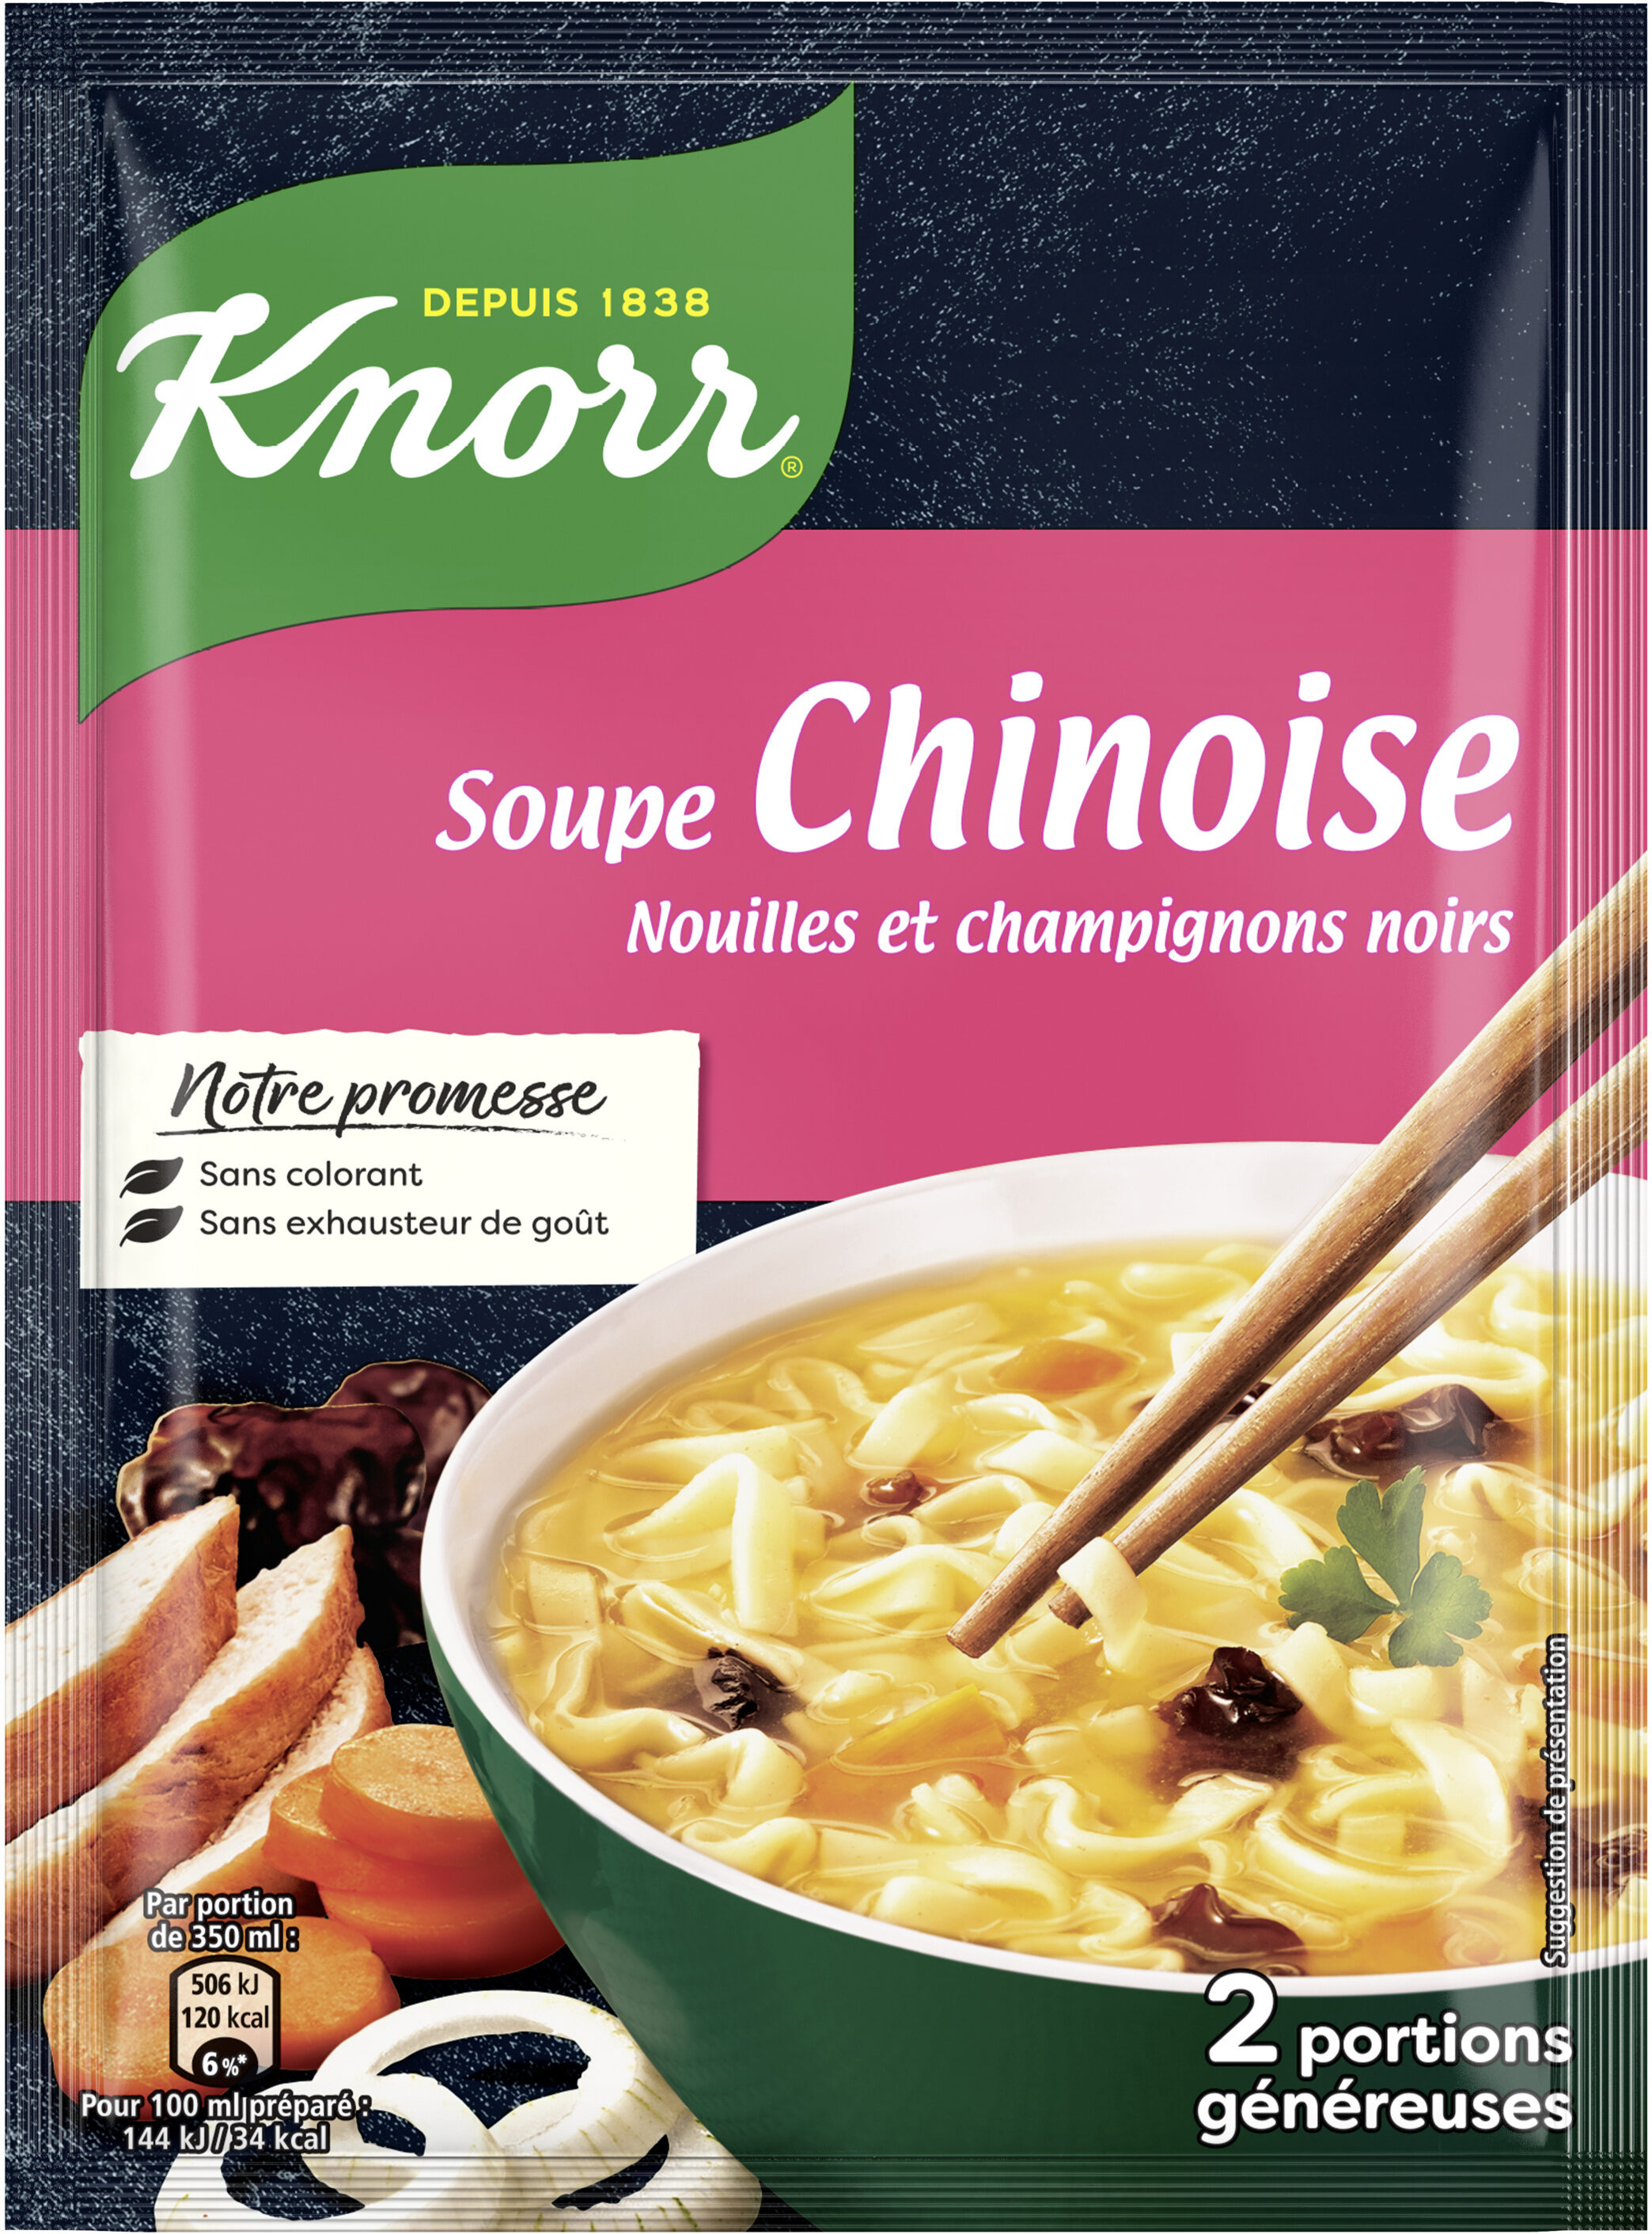 Knorr Soupe Déshydratée Chinoise Nouilles et Champignons Noirs Sachet 69g 2 Portions - Producto - fr